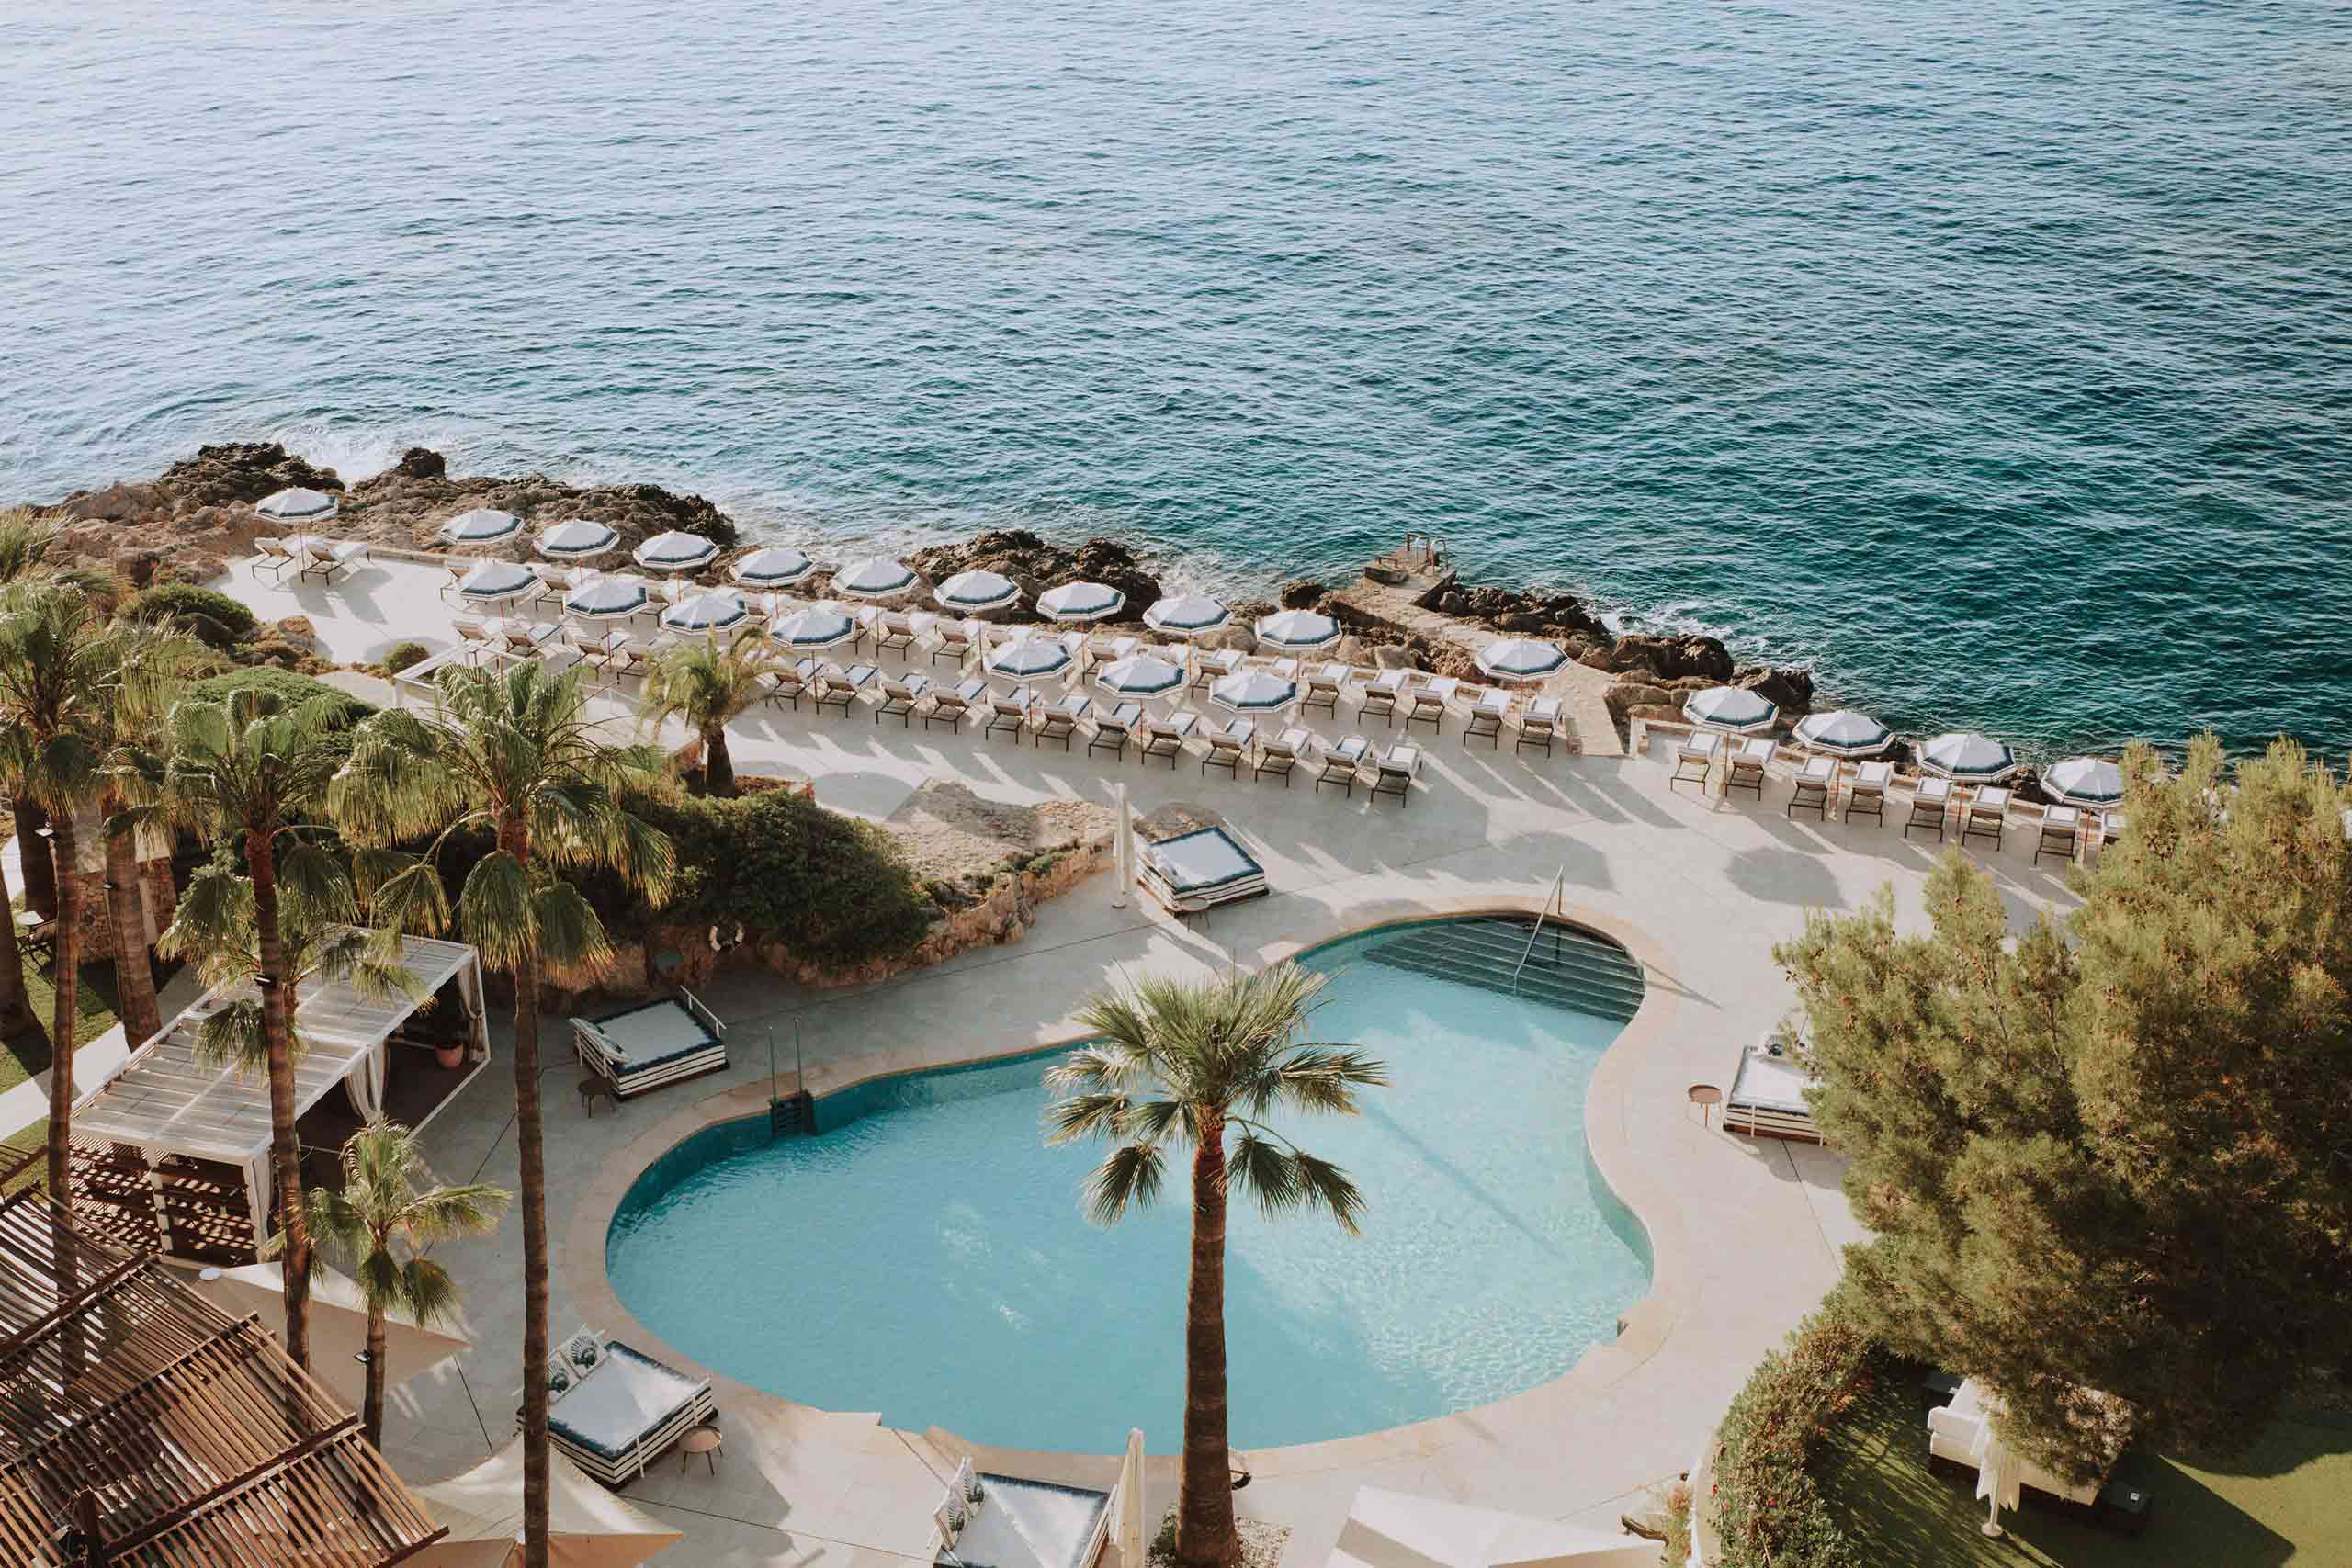 Hotel de Mar Gran Melia pool by the sea